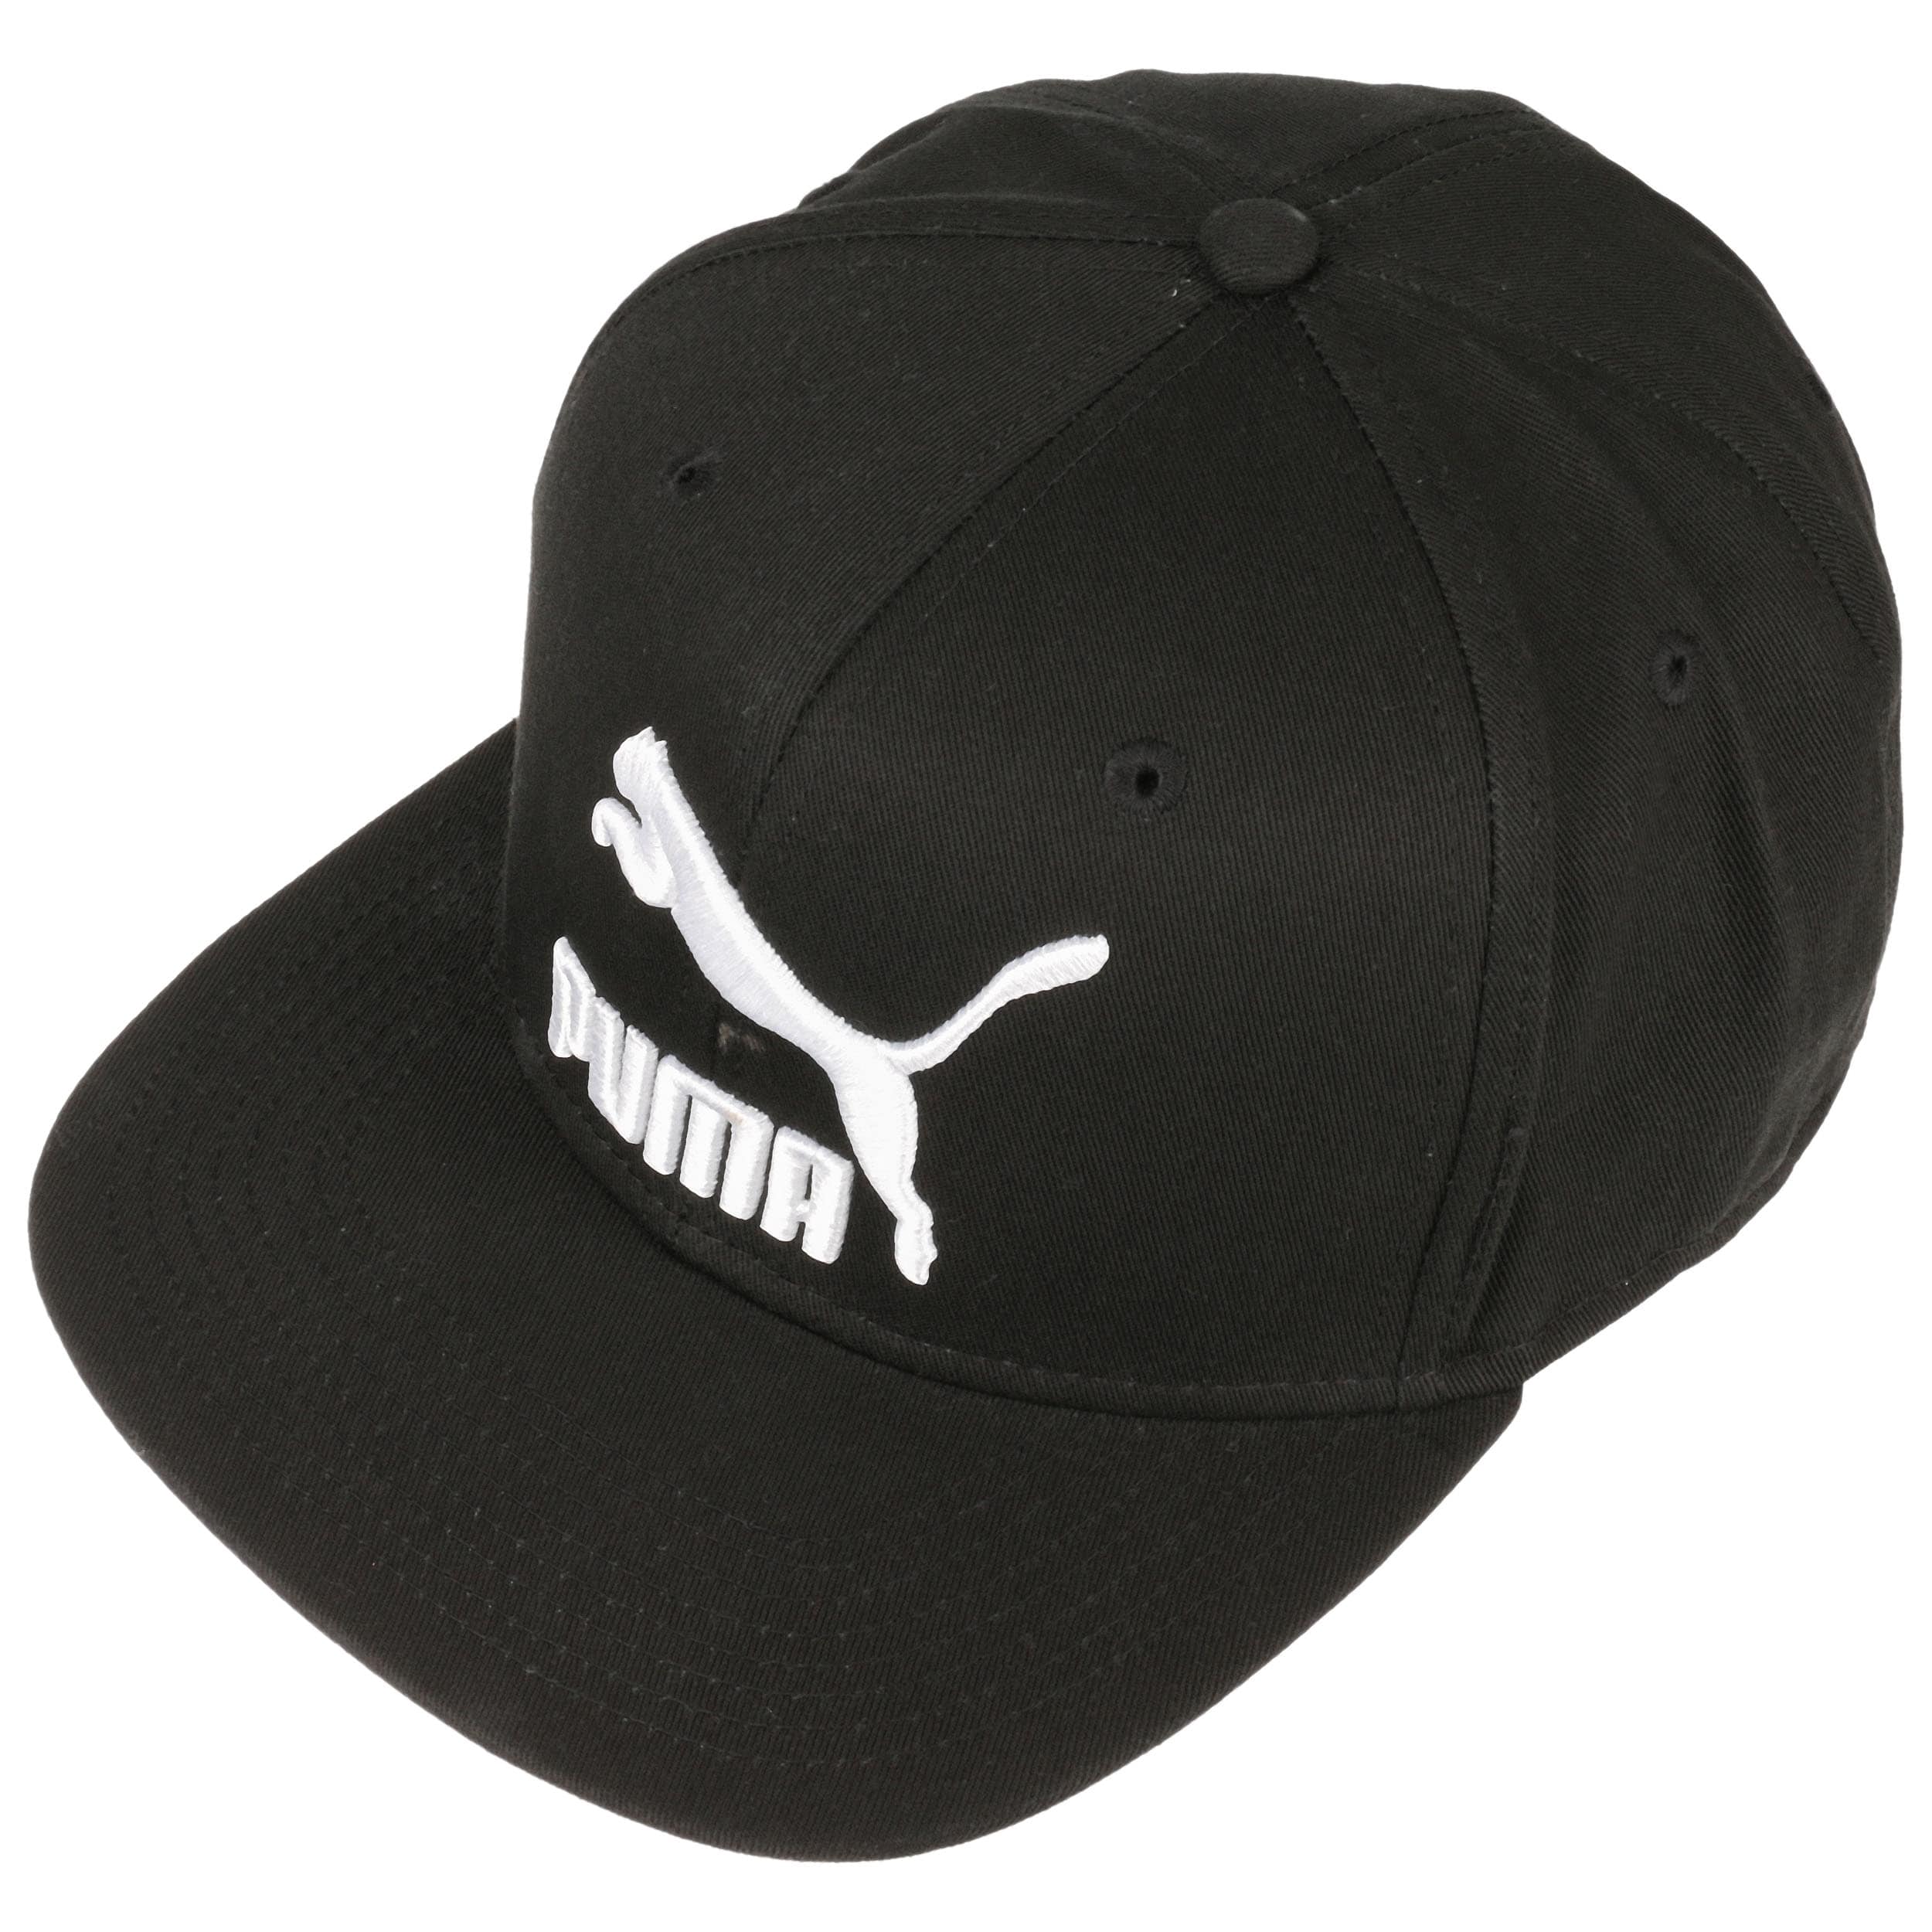 LS Colour Block Snapback Cap by PUMA --> Shop Hats, Beanies & Caps ...